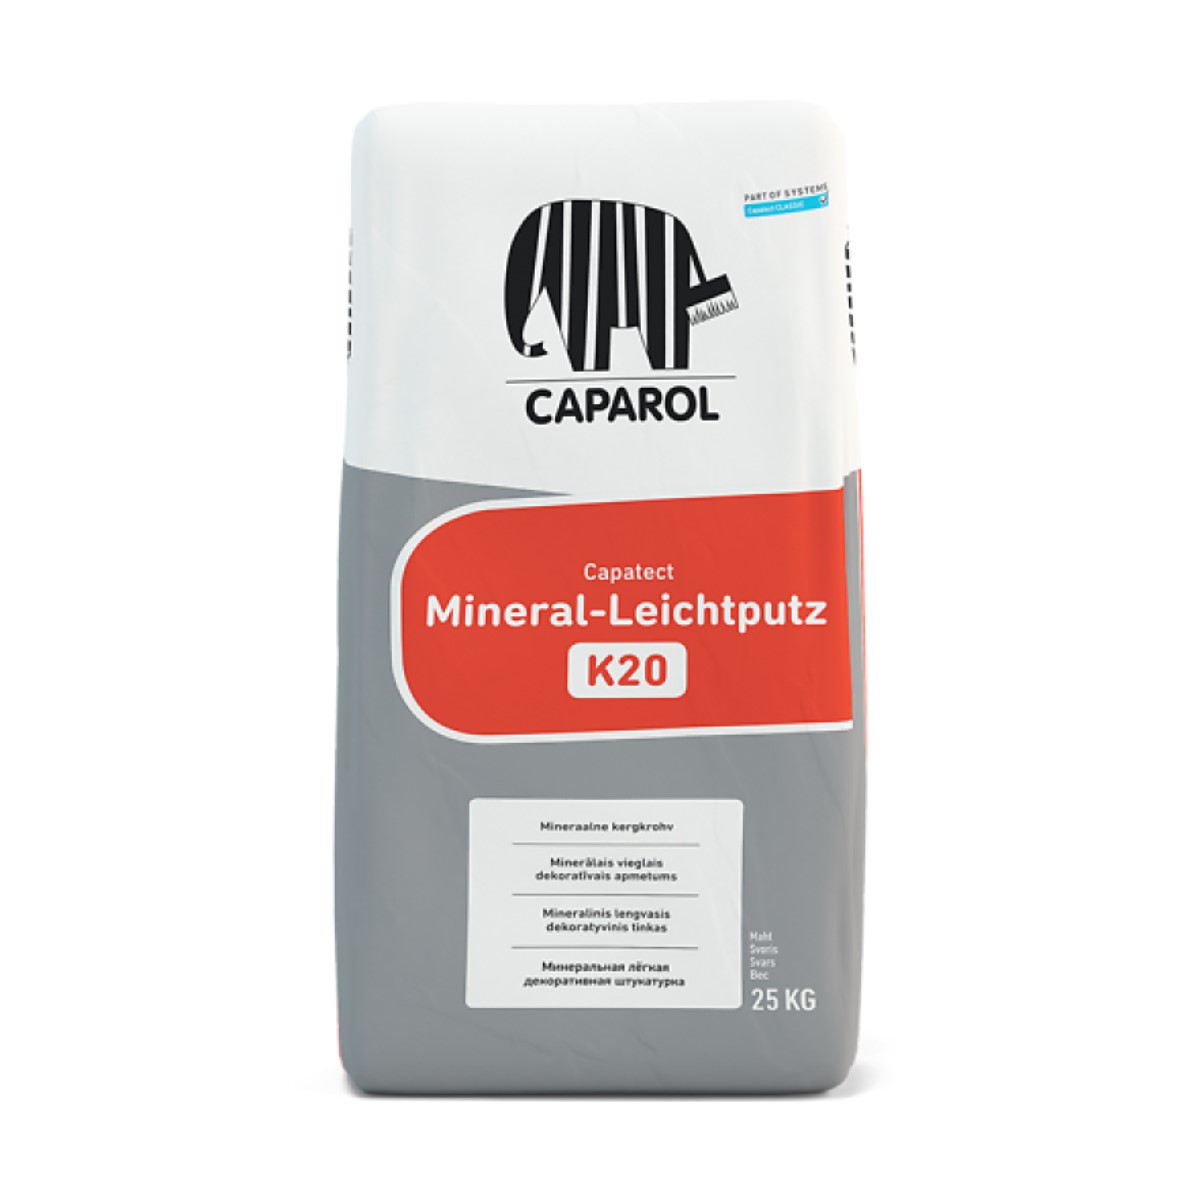 Caparol Capatect Mineral Leichtputz K15 Vieglais minerālais struktūrapmetums (biezpiens) 1.5mm, 25kg